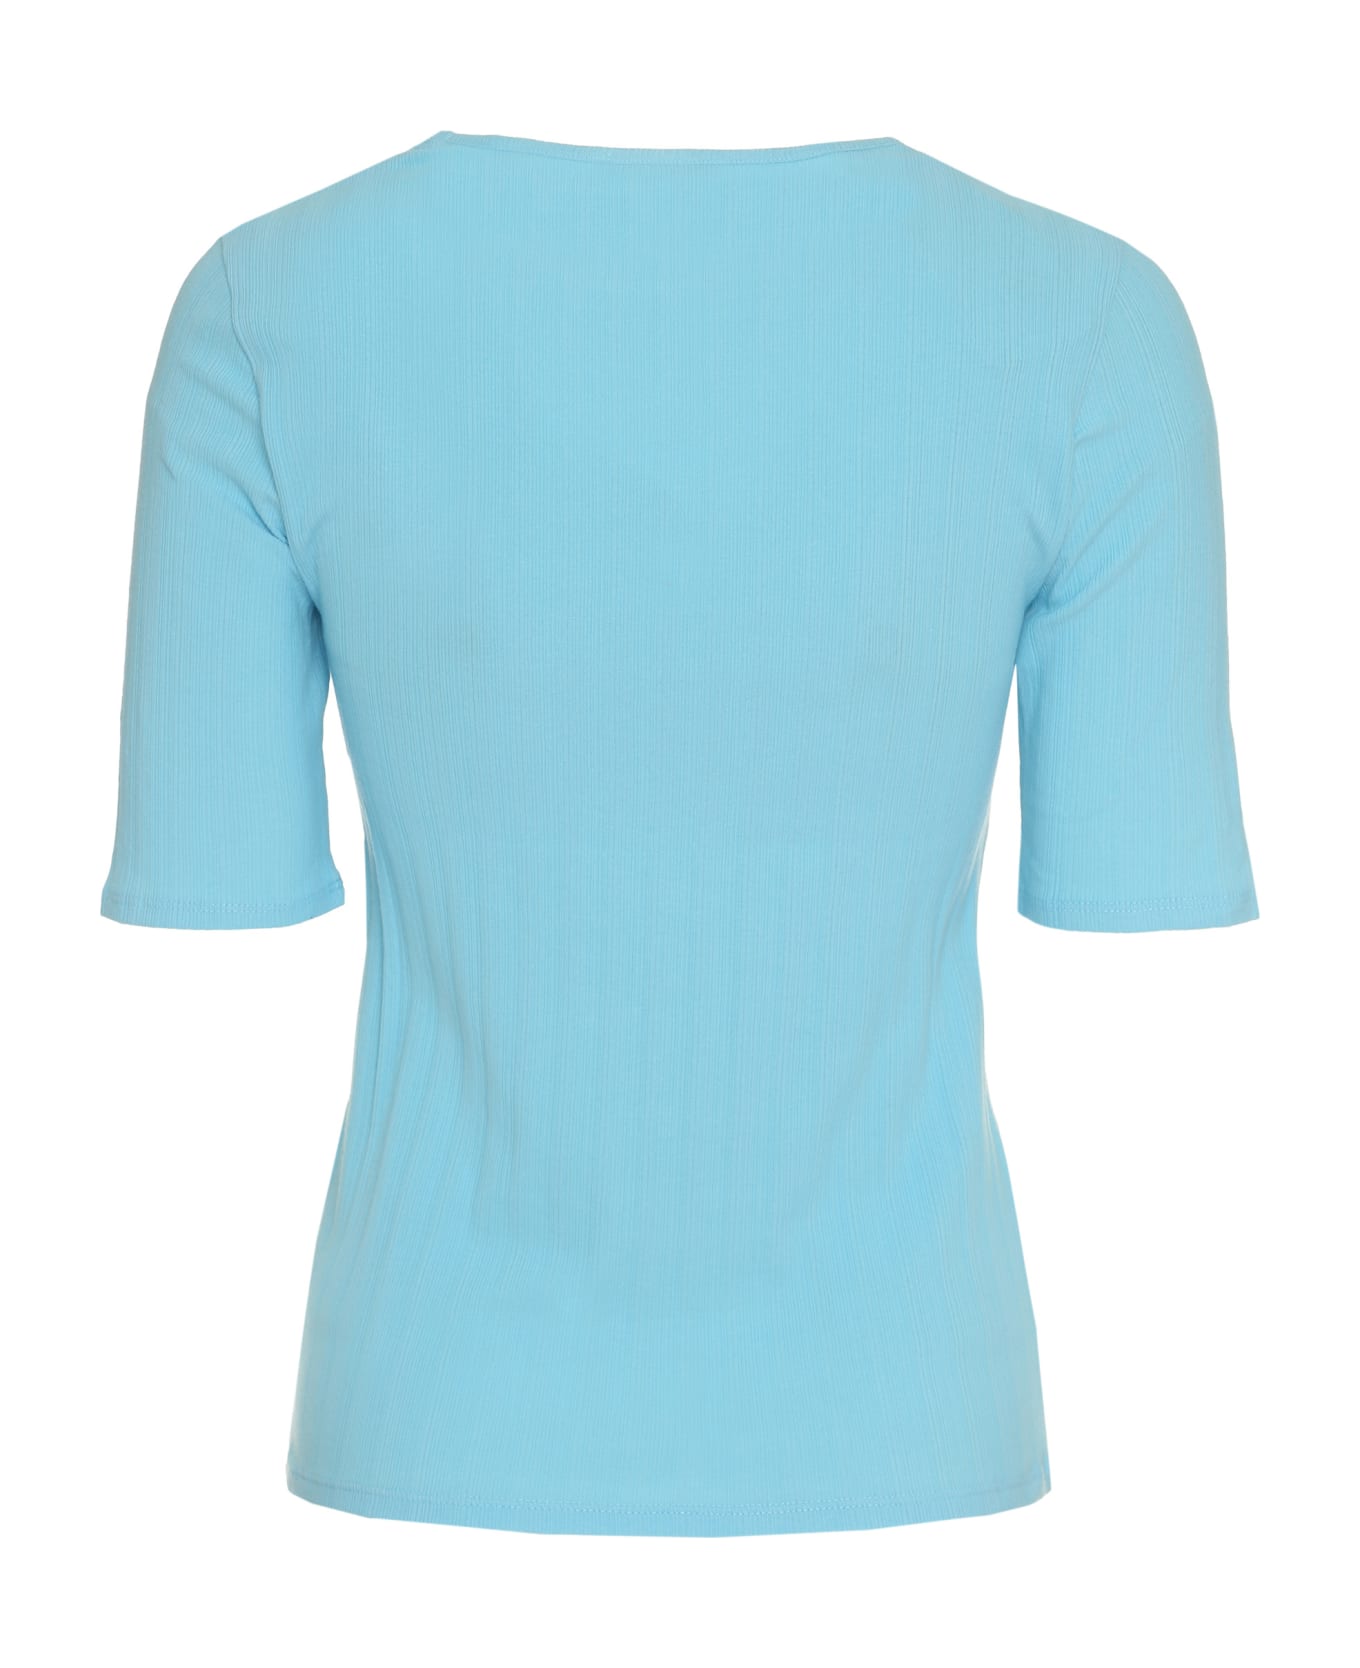 Vince Cotton Knit T-shirt - Light Blue Tシャツ